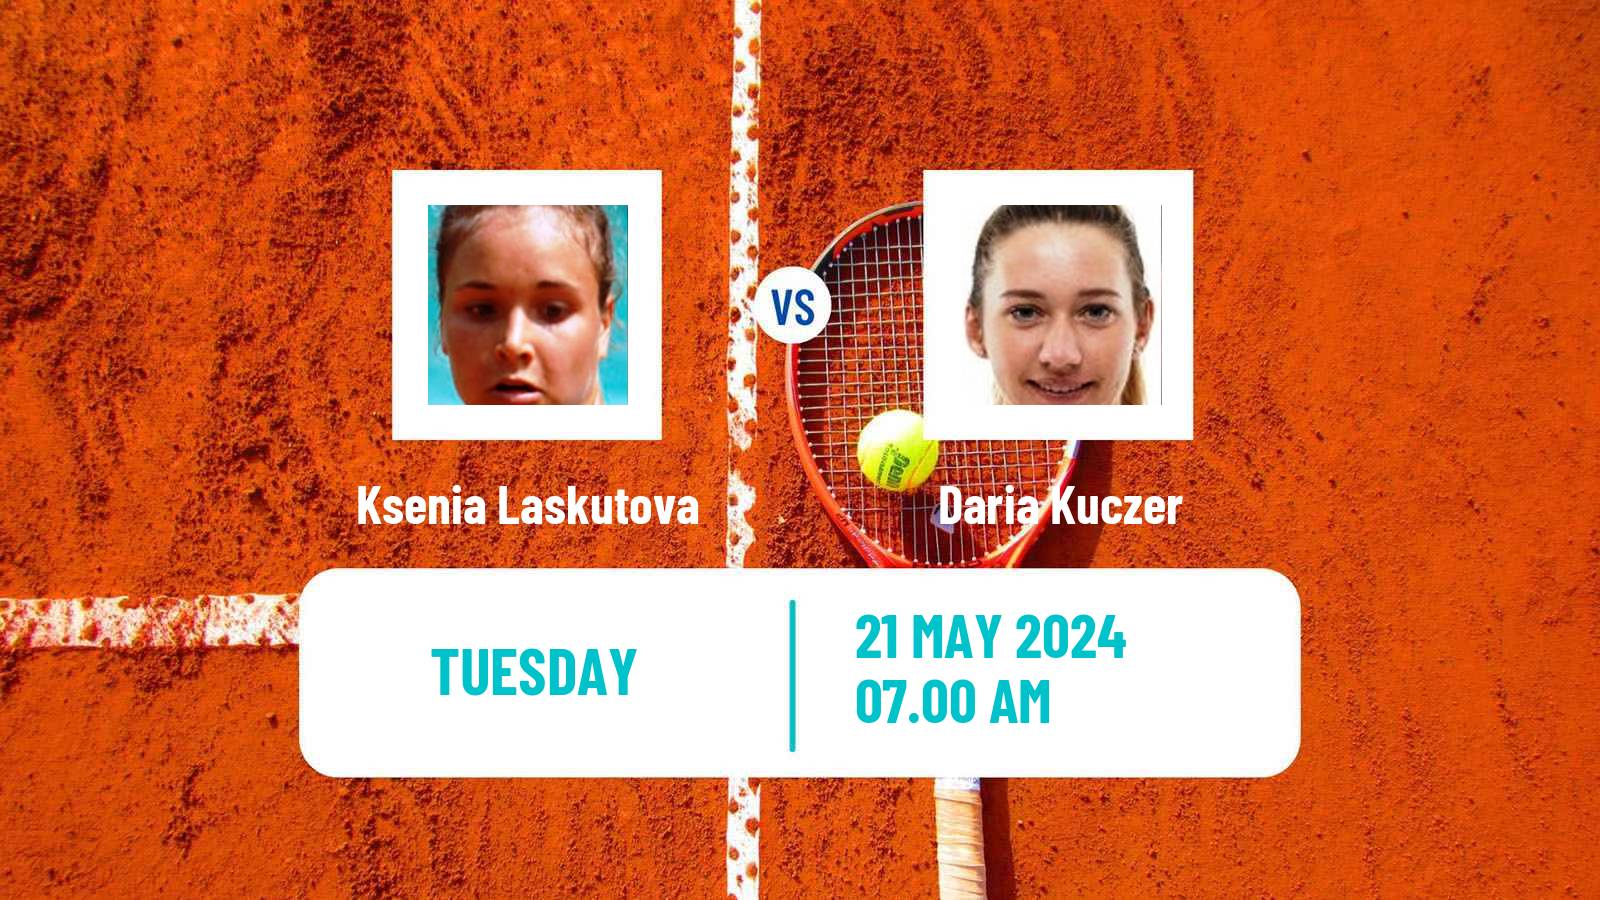 Tennis ITF W35 Kursumlijska Banja Women 2024 Ksenia Laskutova - Daria Kuczer